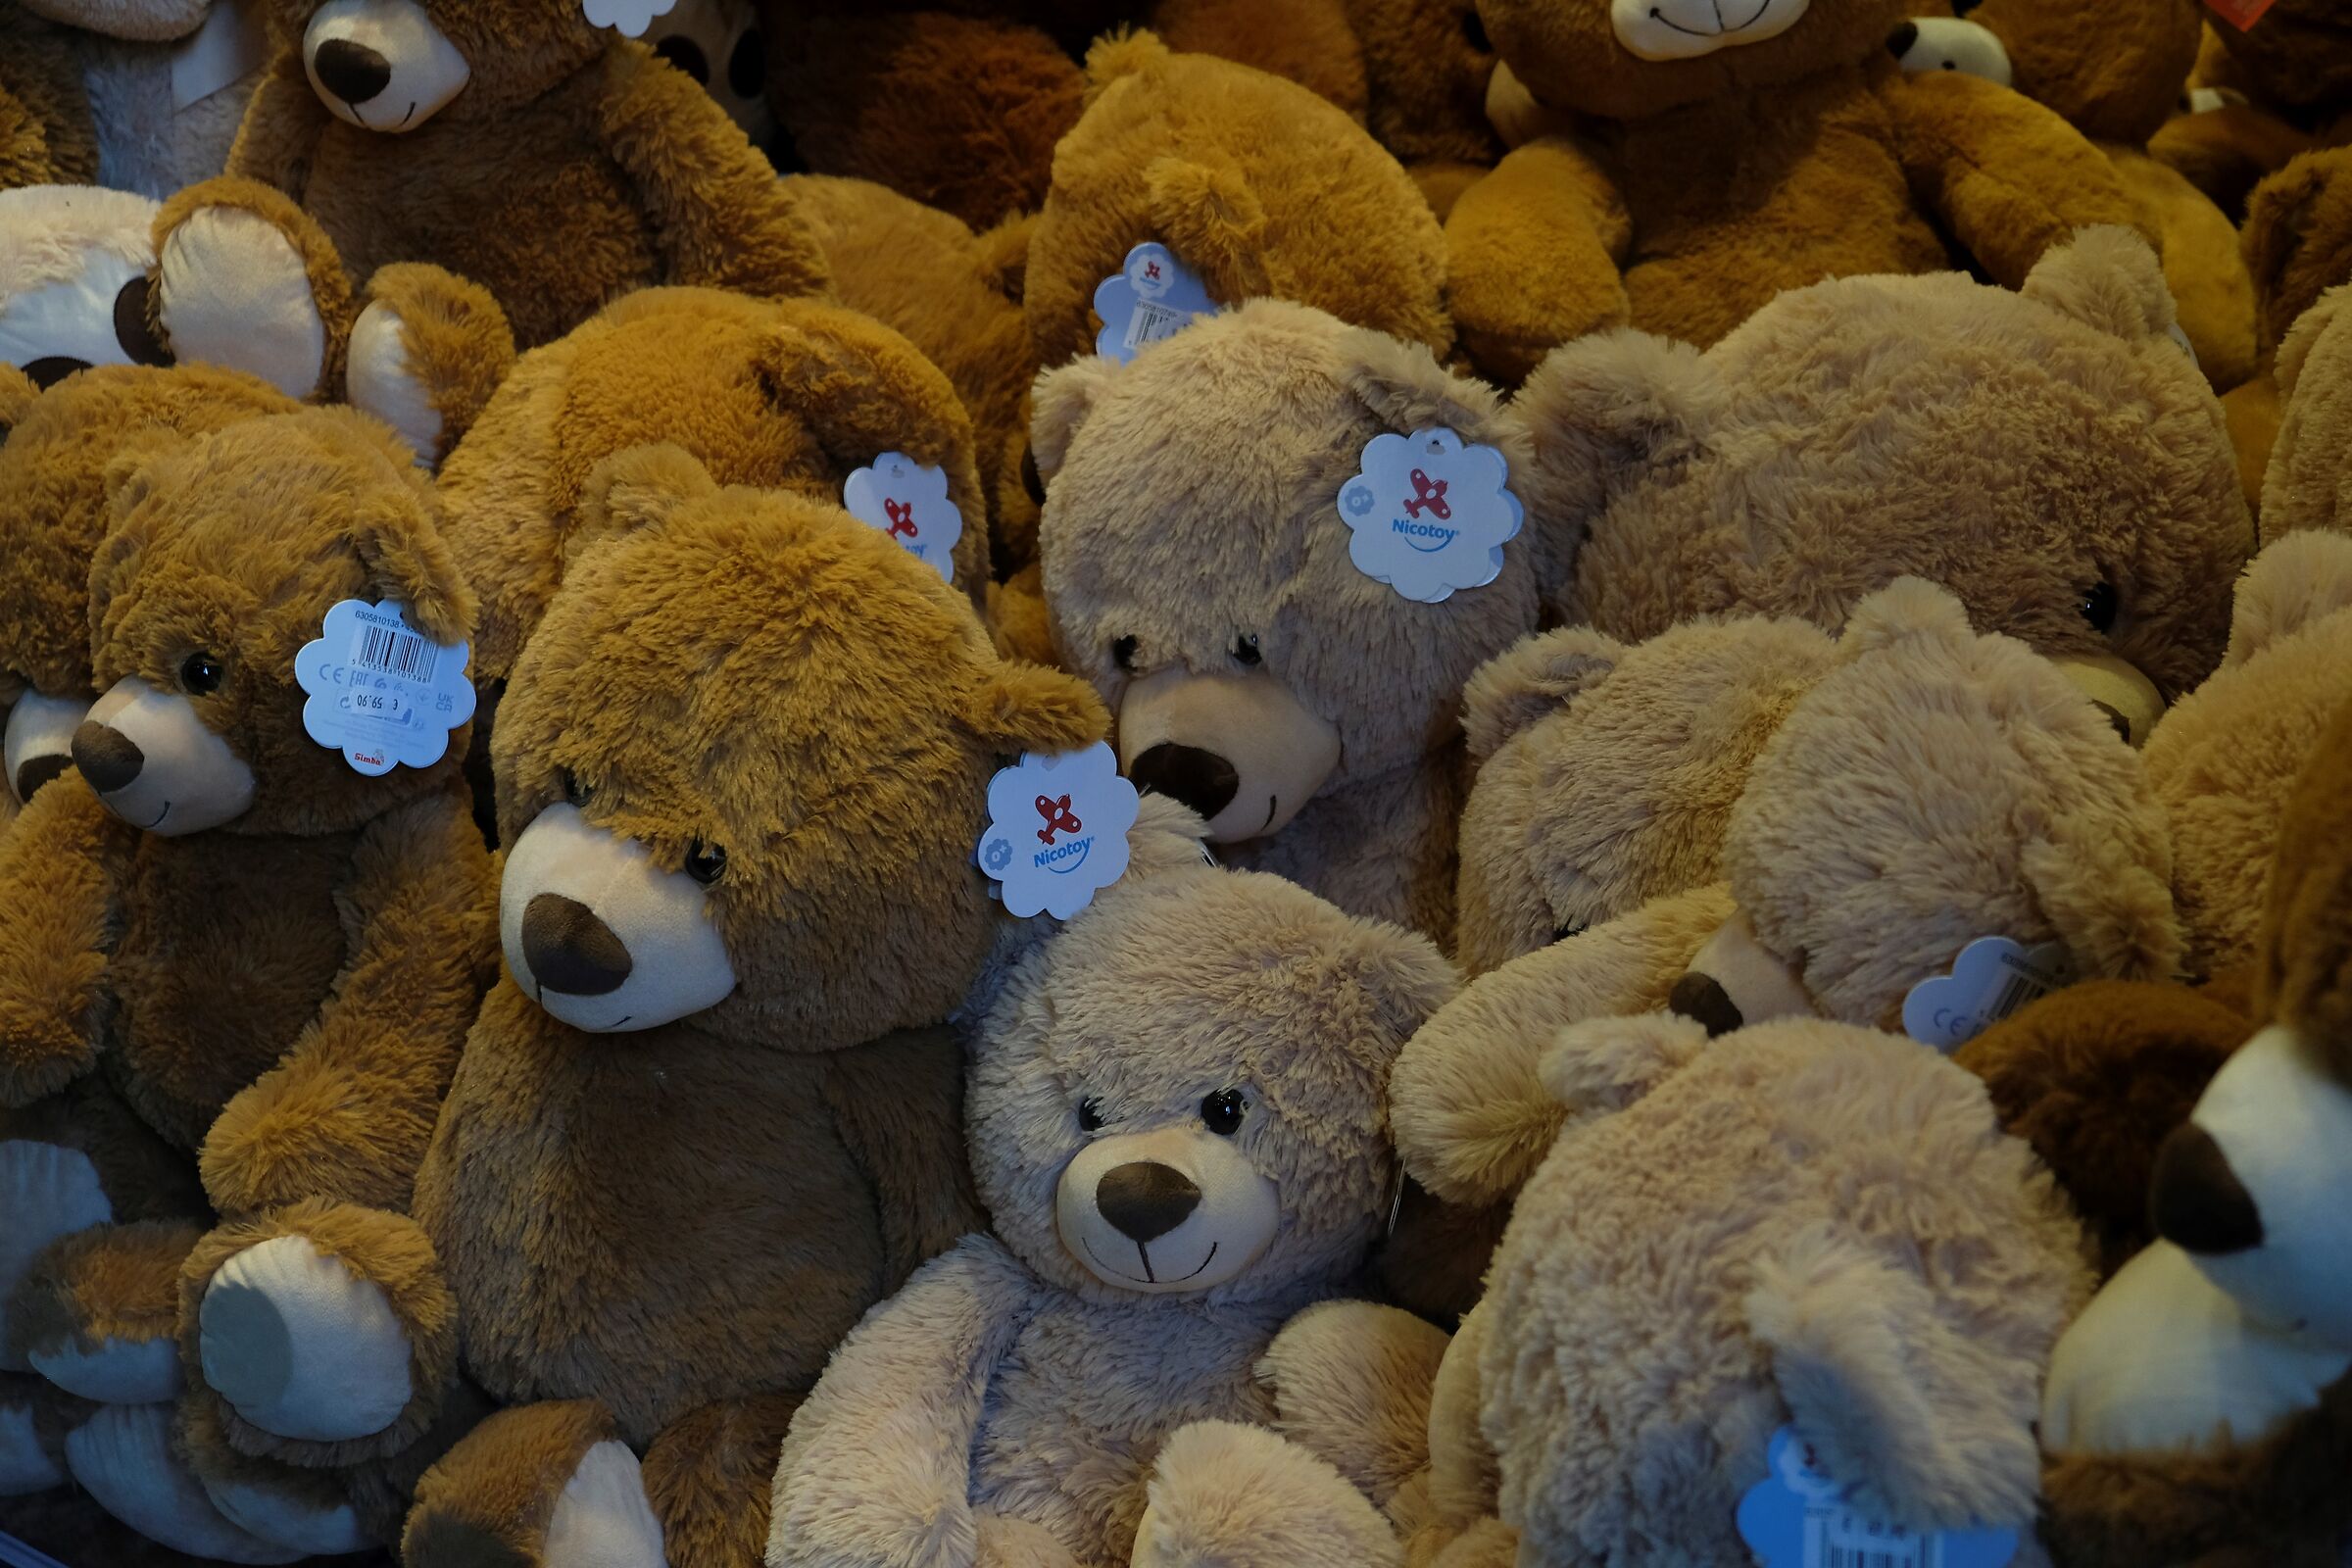 Who wants a teddy bear?...